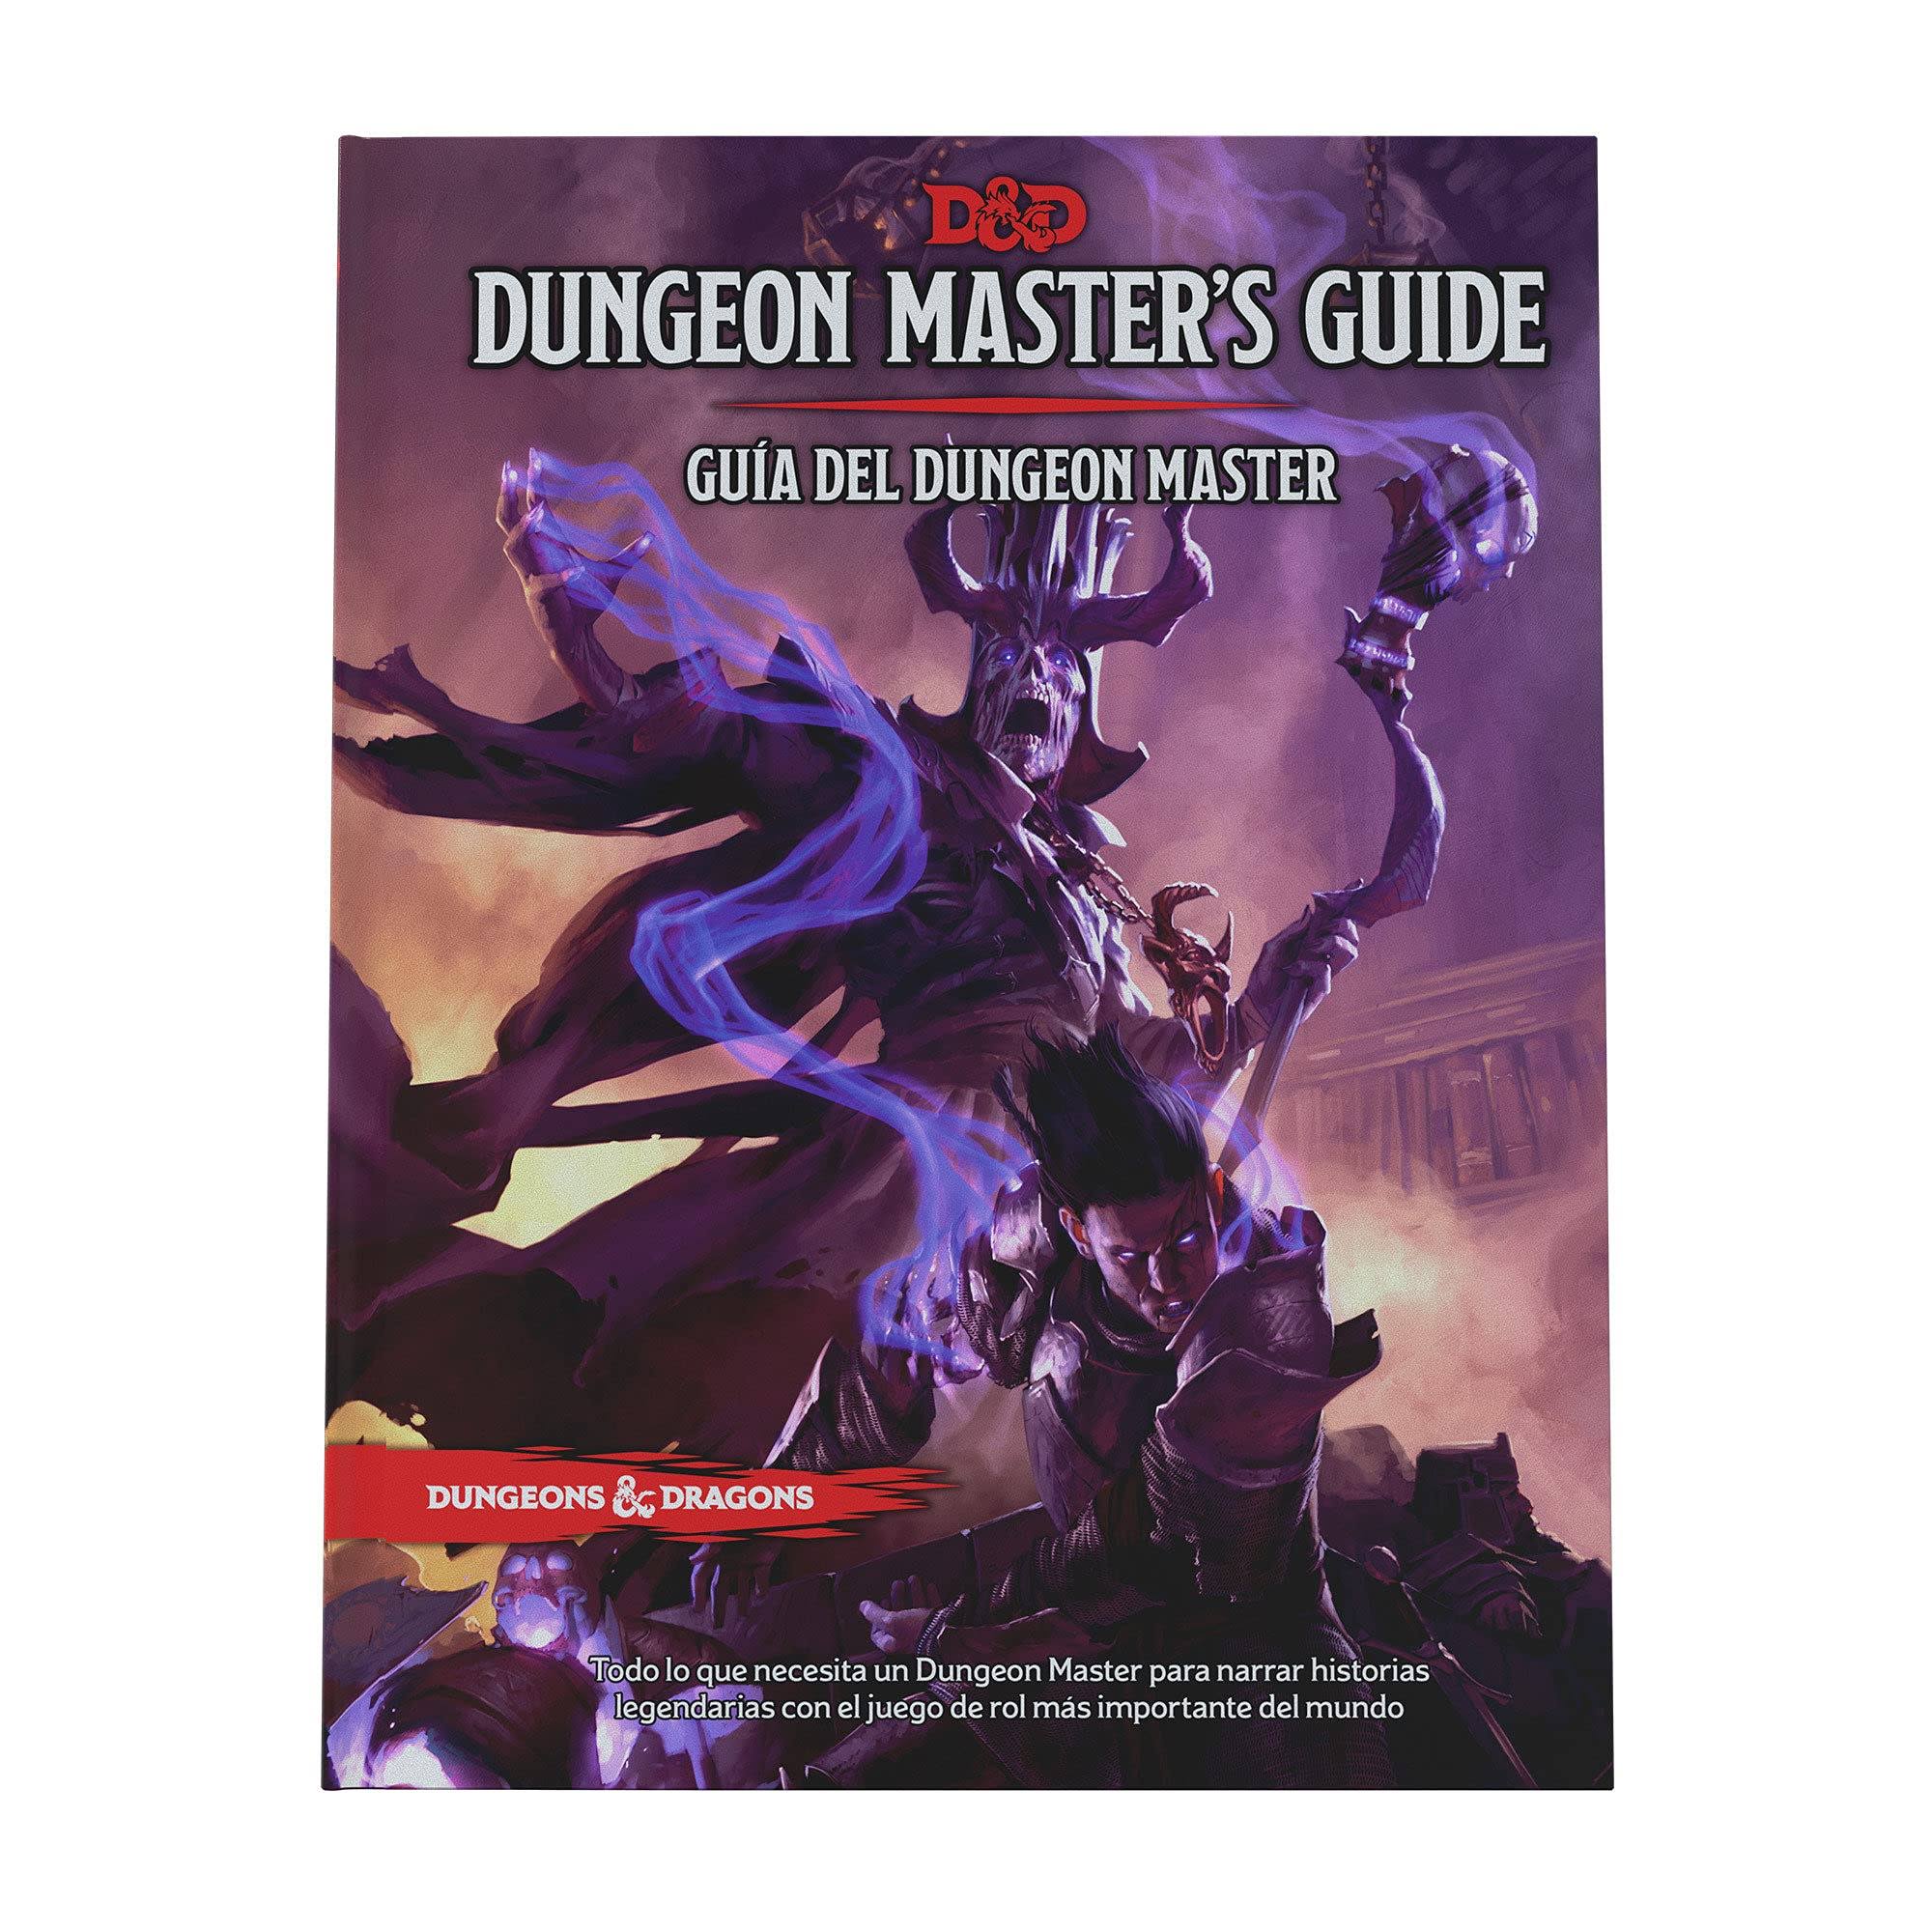 Dungeon Master's Guide: Guía del Dungeon Master de Dungeons & Dragons (reglament o básico del juego de rol D&D) [Book]